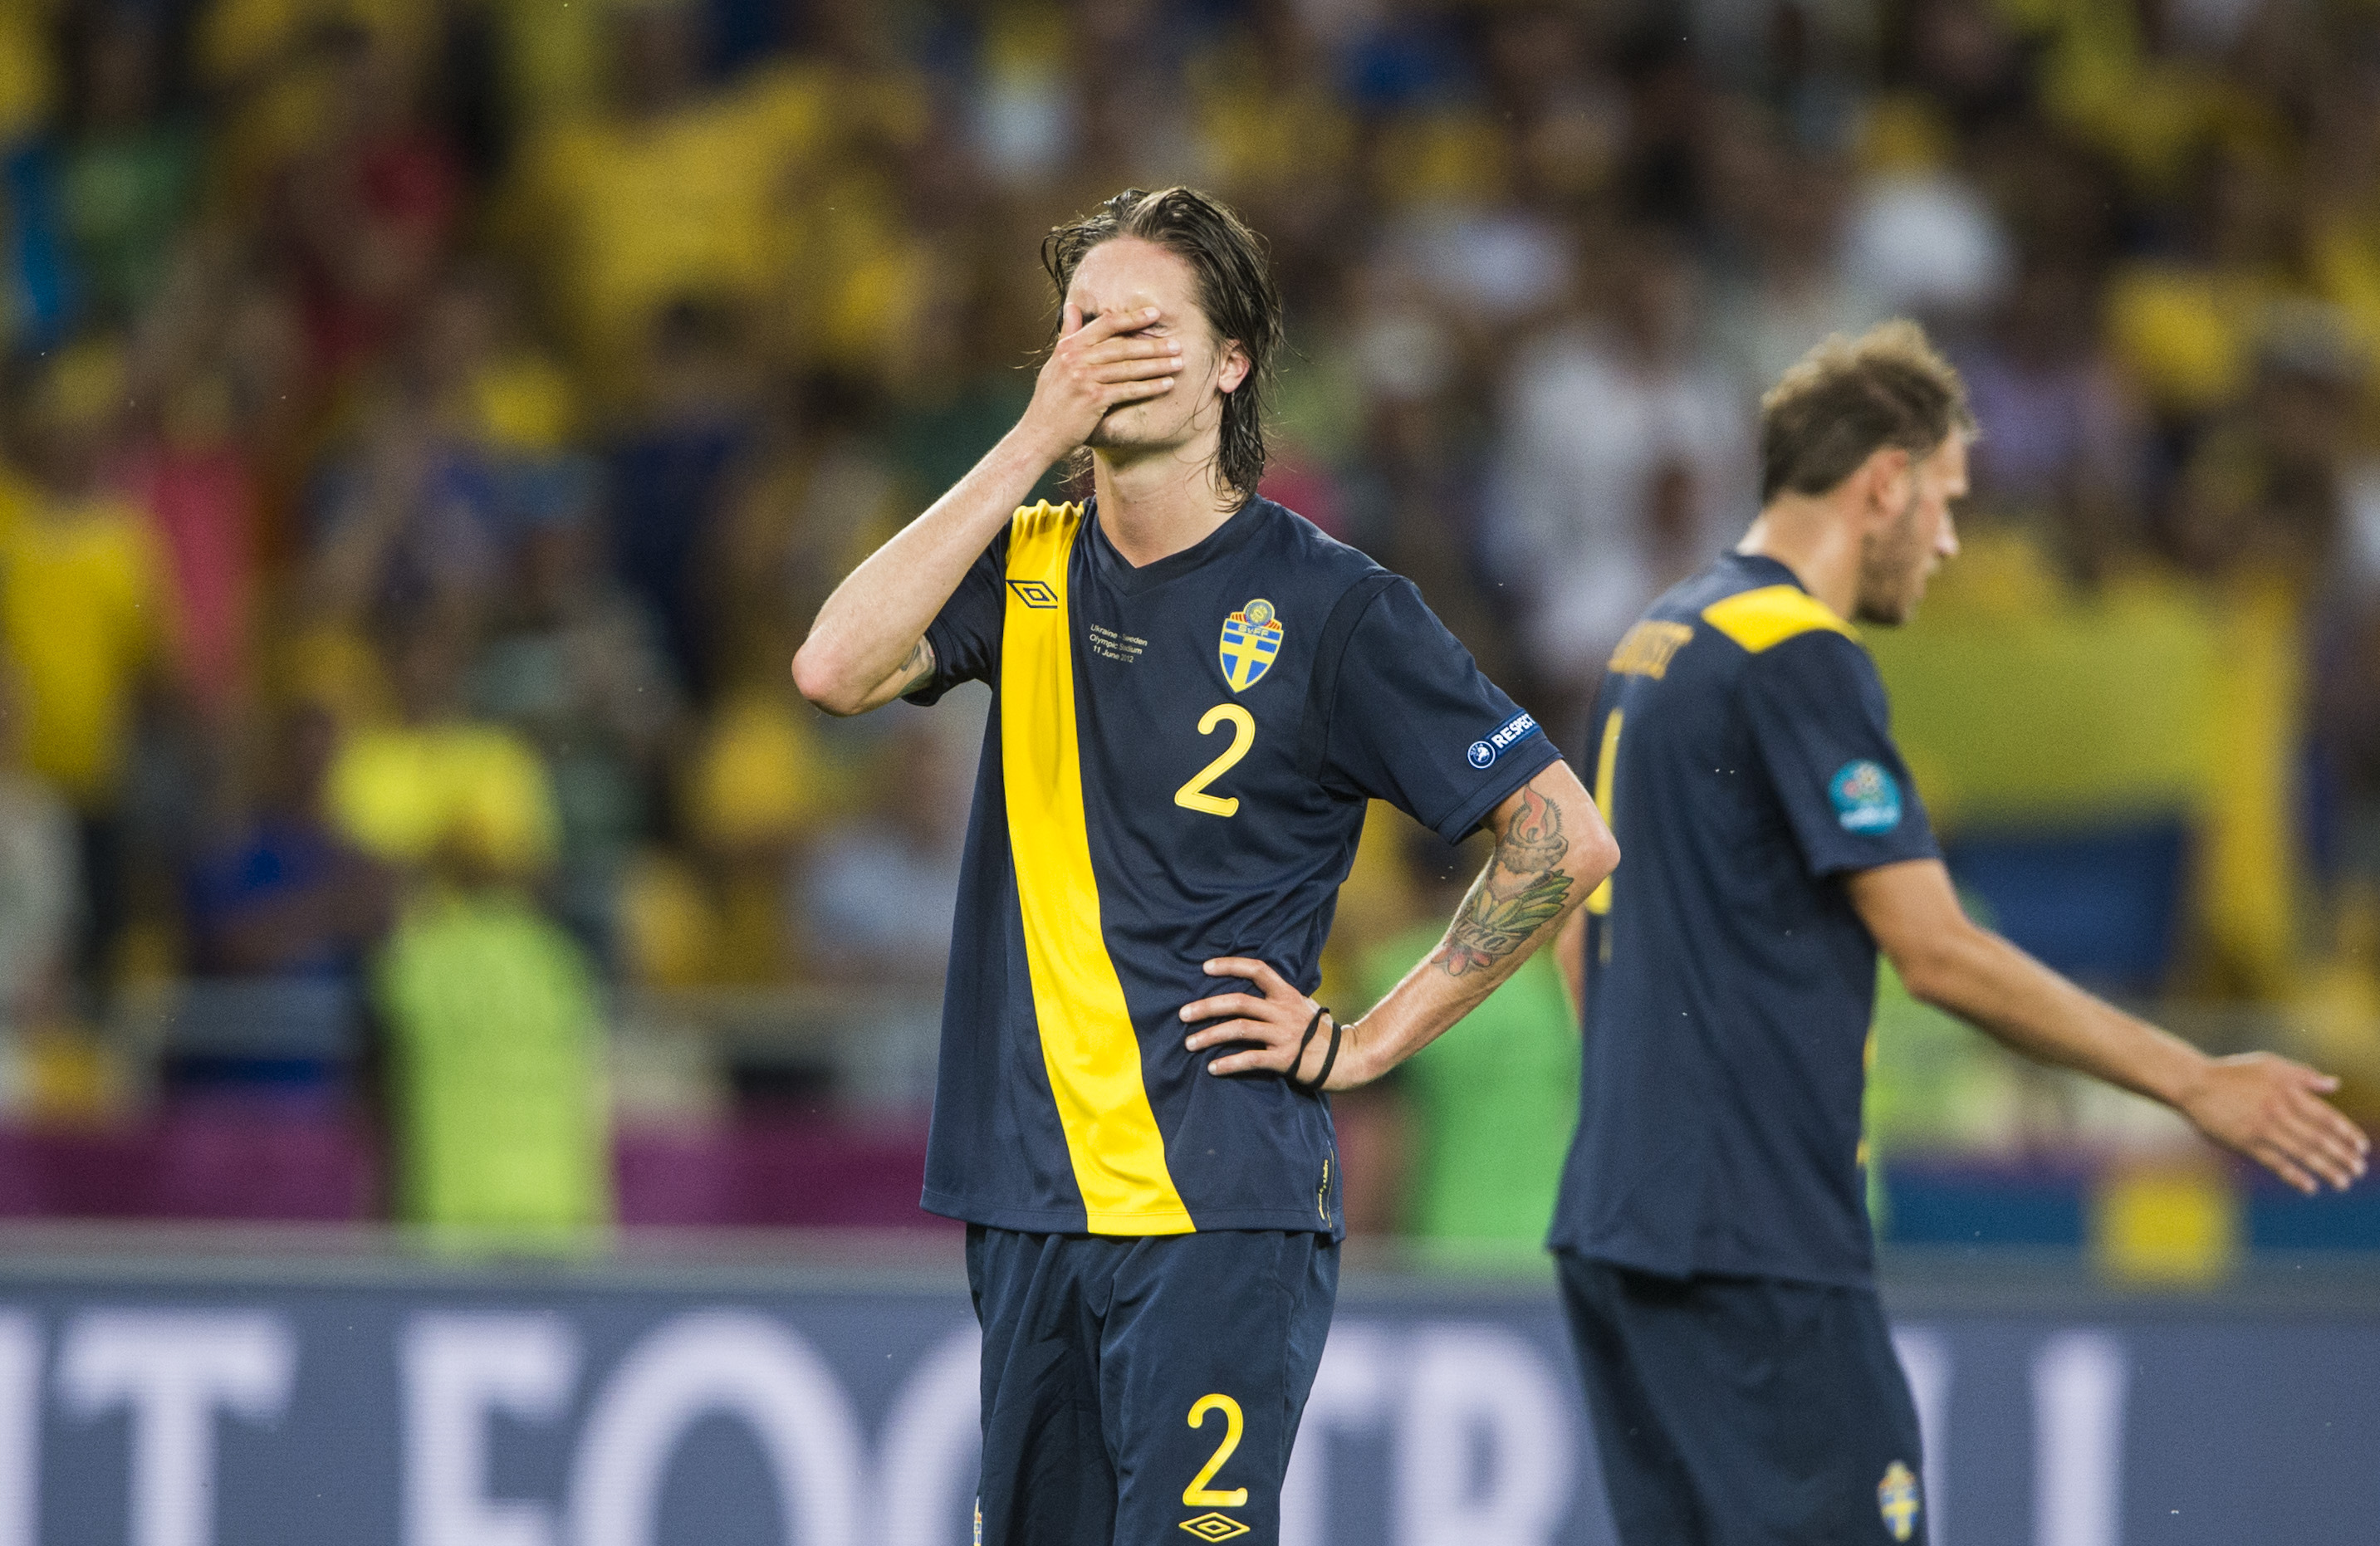 6. Mikael Lustig deppar efter sin egen och Sveriges floppmatch mot Ukraina.